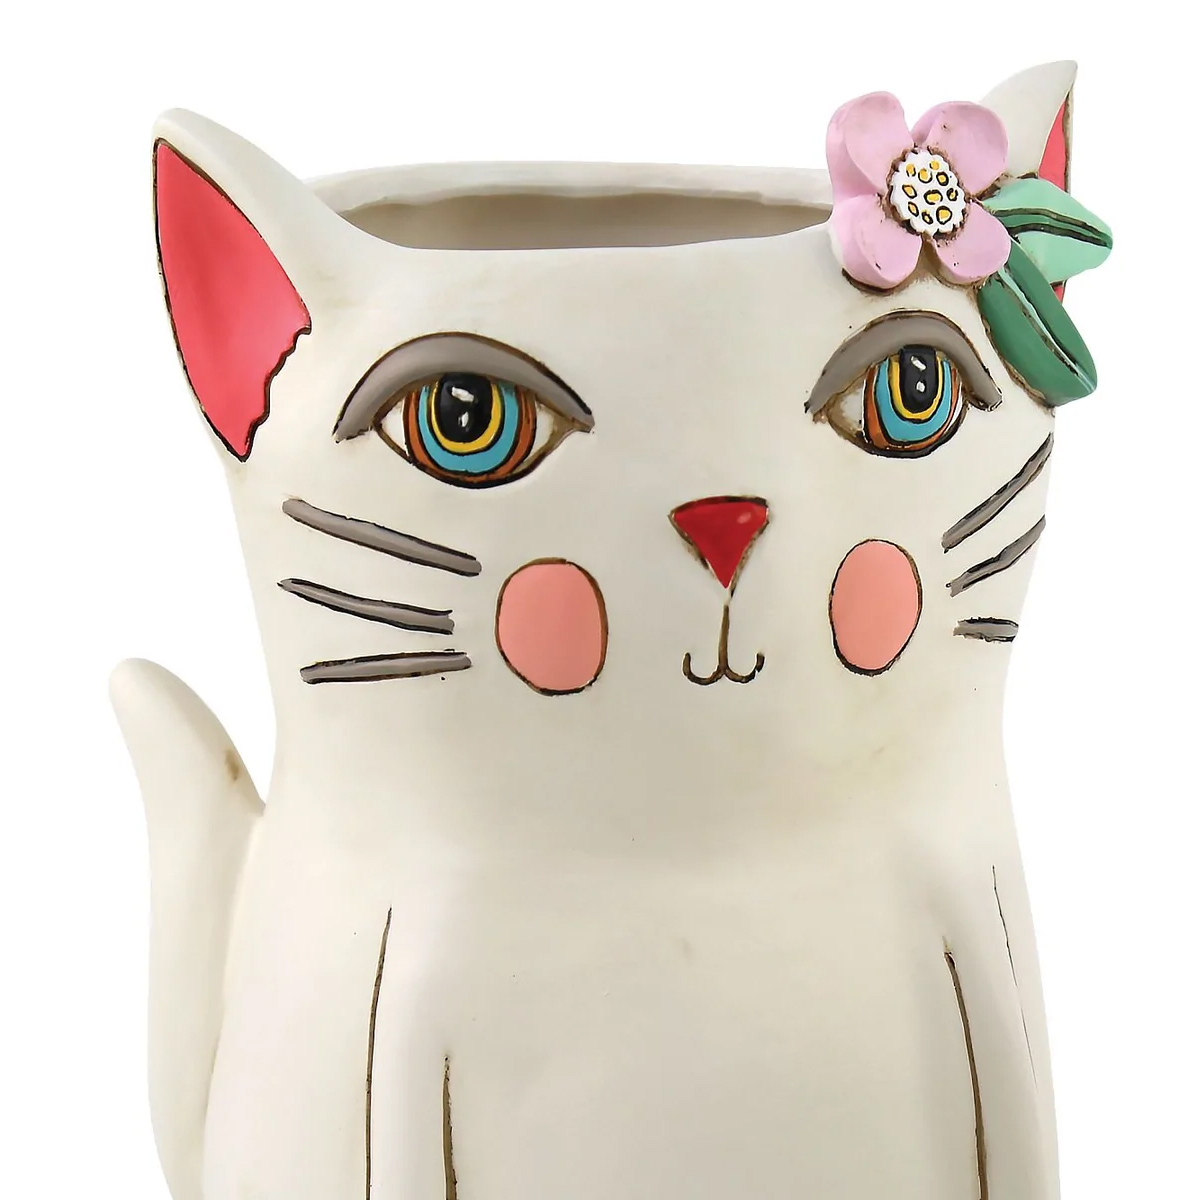 Allen Designs Flowerpot - Cat